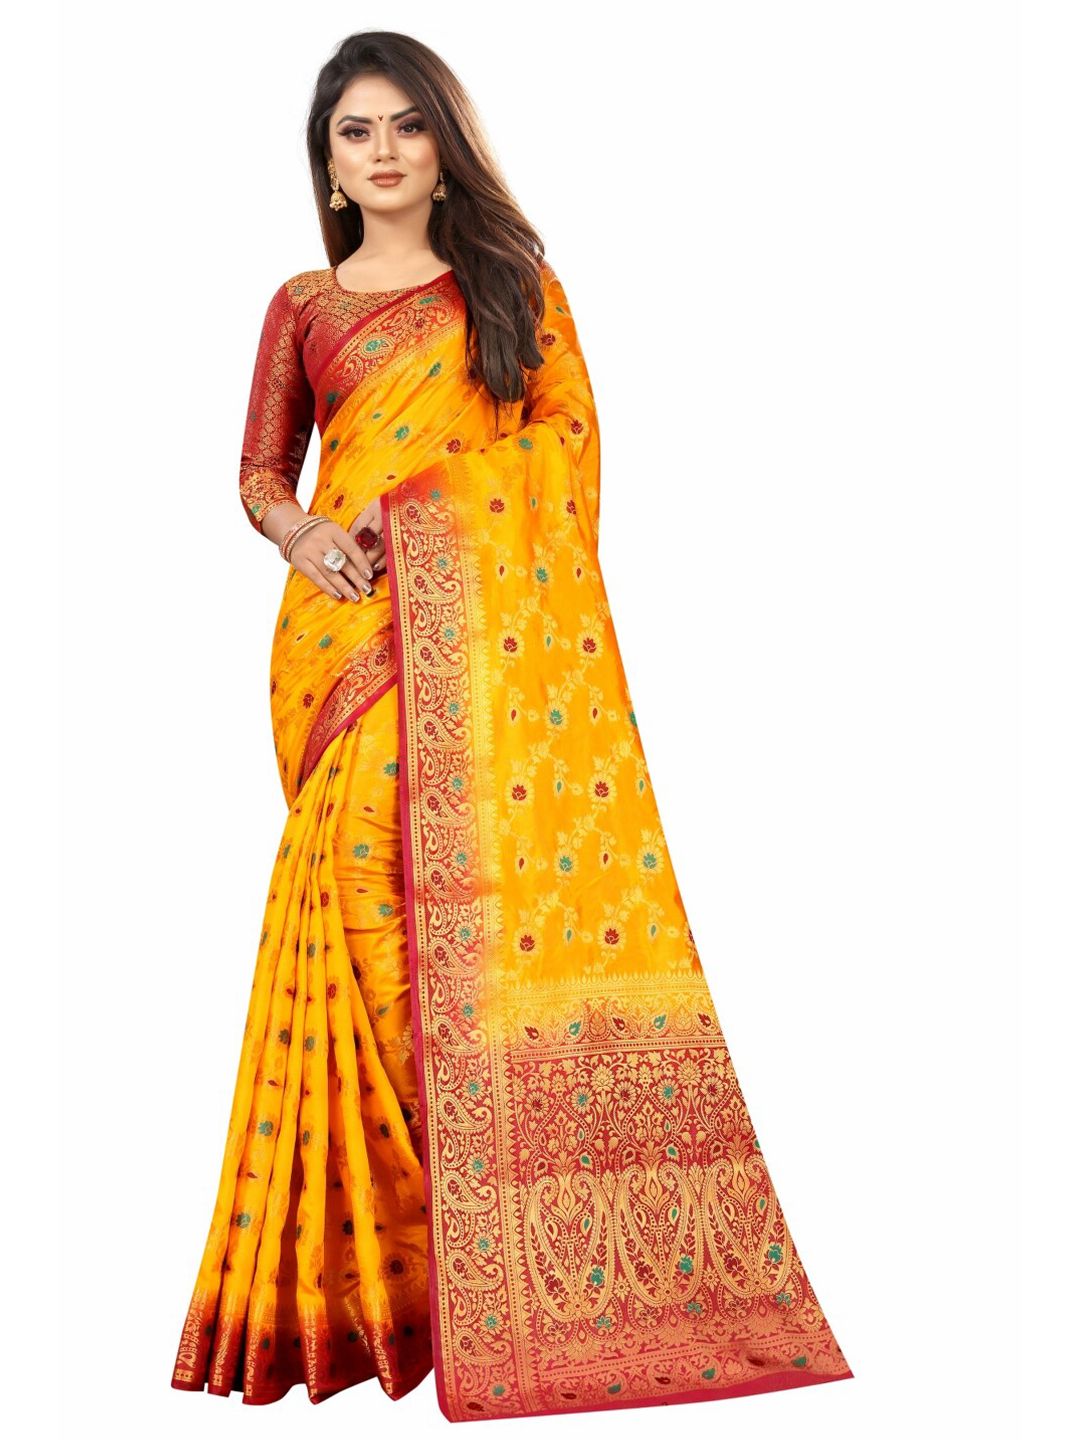 PERFECT WEAR Yellow & Red Ethnic Motifs Zari Banarasi Saree Price in India